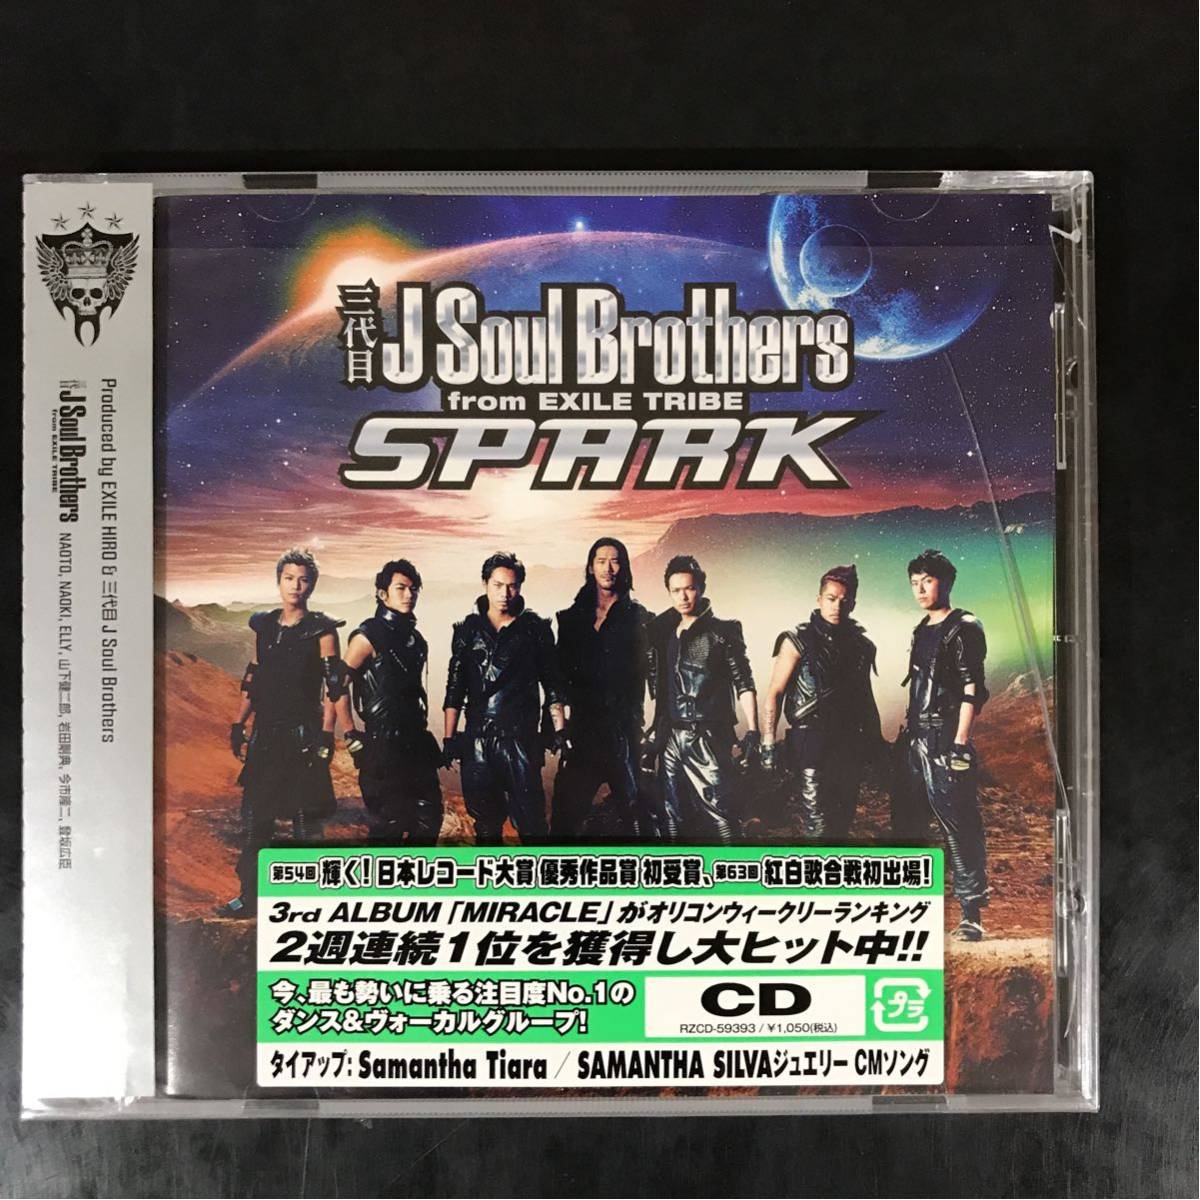 47 中古cd100円三代目j Soul Brothers Spark 日本代购 买对网